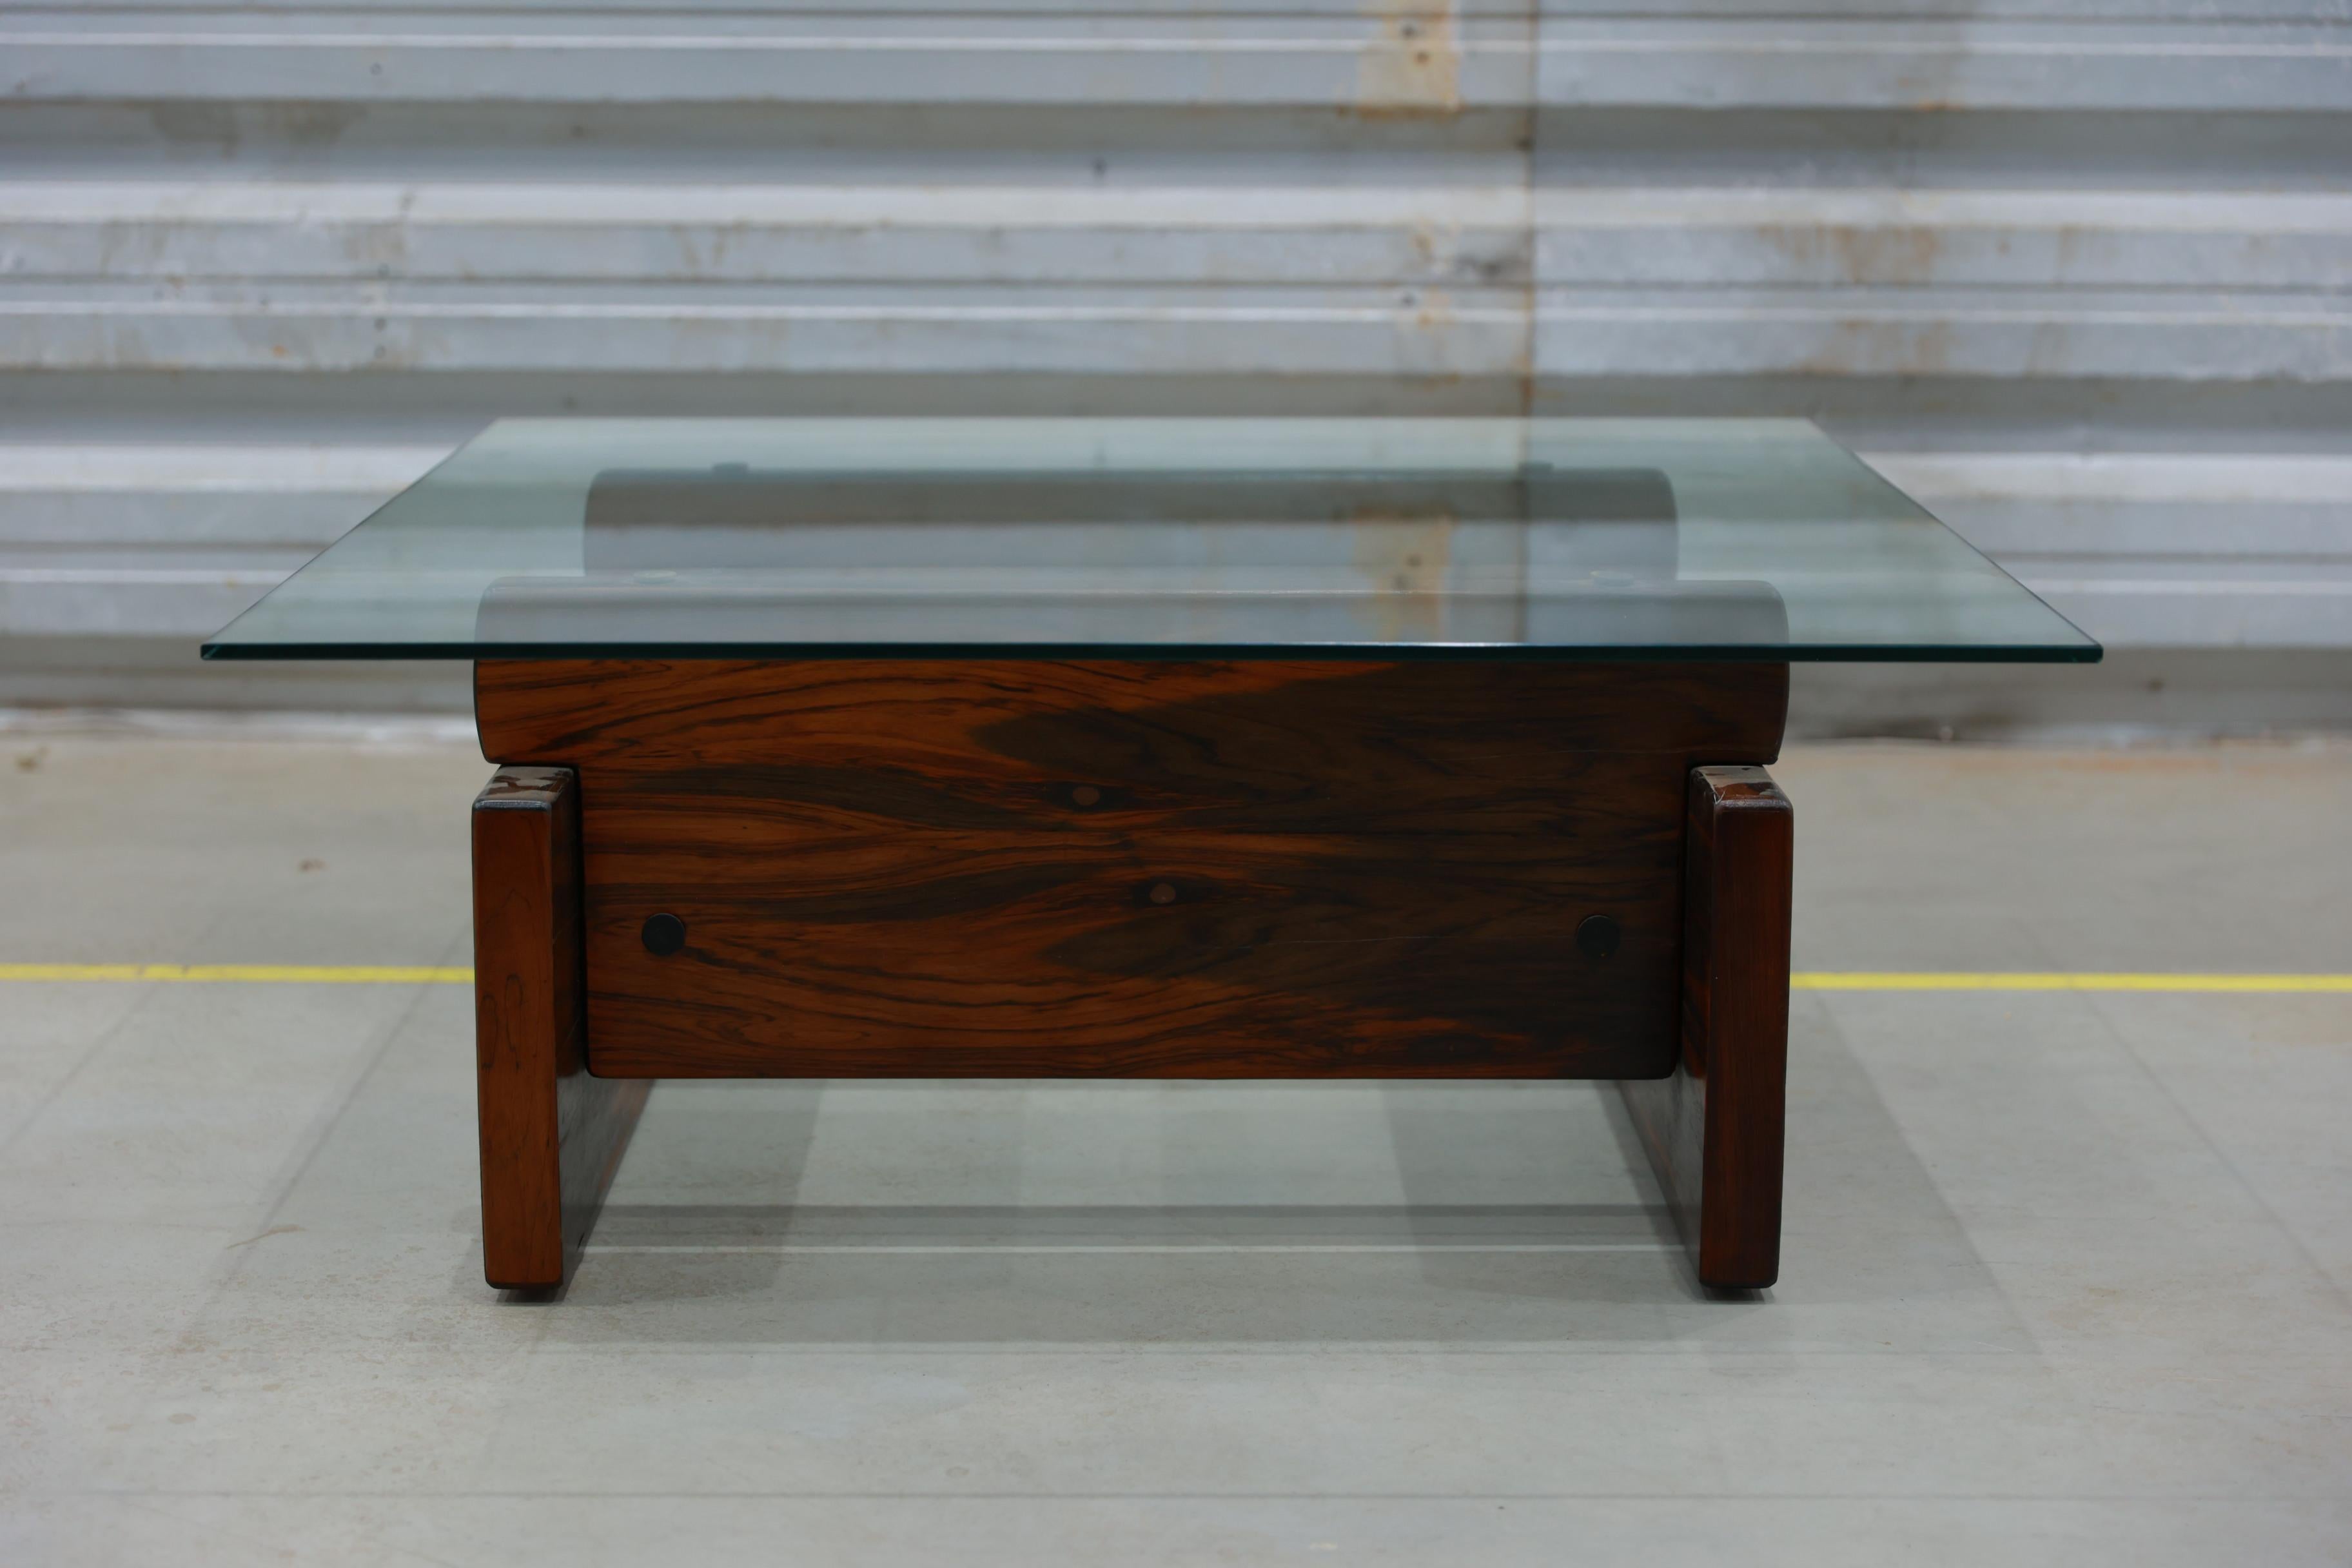 Disponible dès aujourd'hui, cette table basse moderne du milieu du siècle en bois dur et verre, par Sergio Rodrigues, est LA trouvaille de l'année !

La base de forme carrée est fabriquée en palissandre brésilien massif (Jacaranda) avec un placage